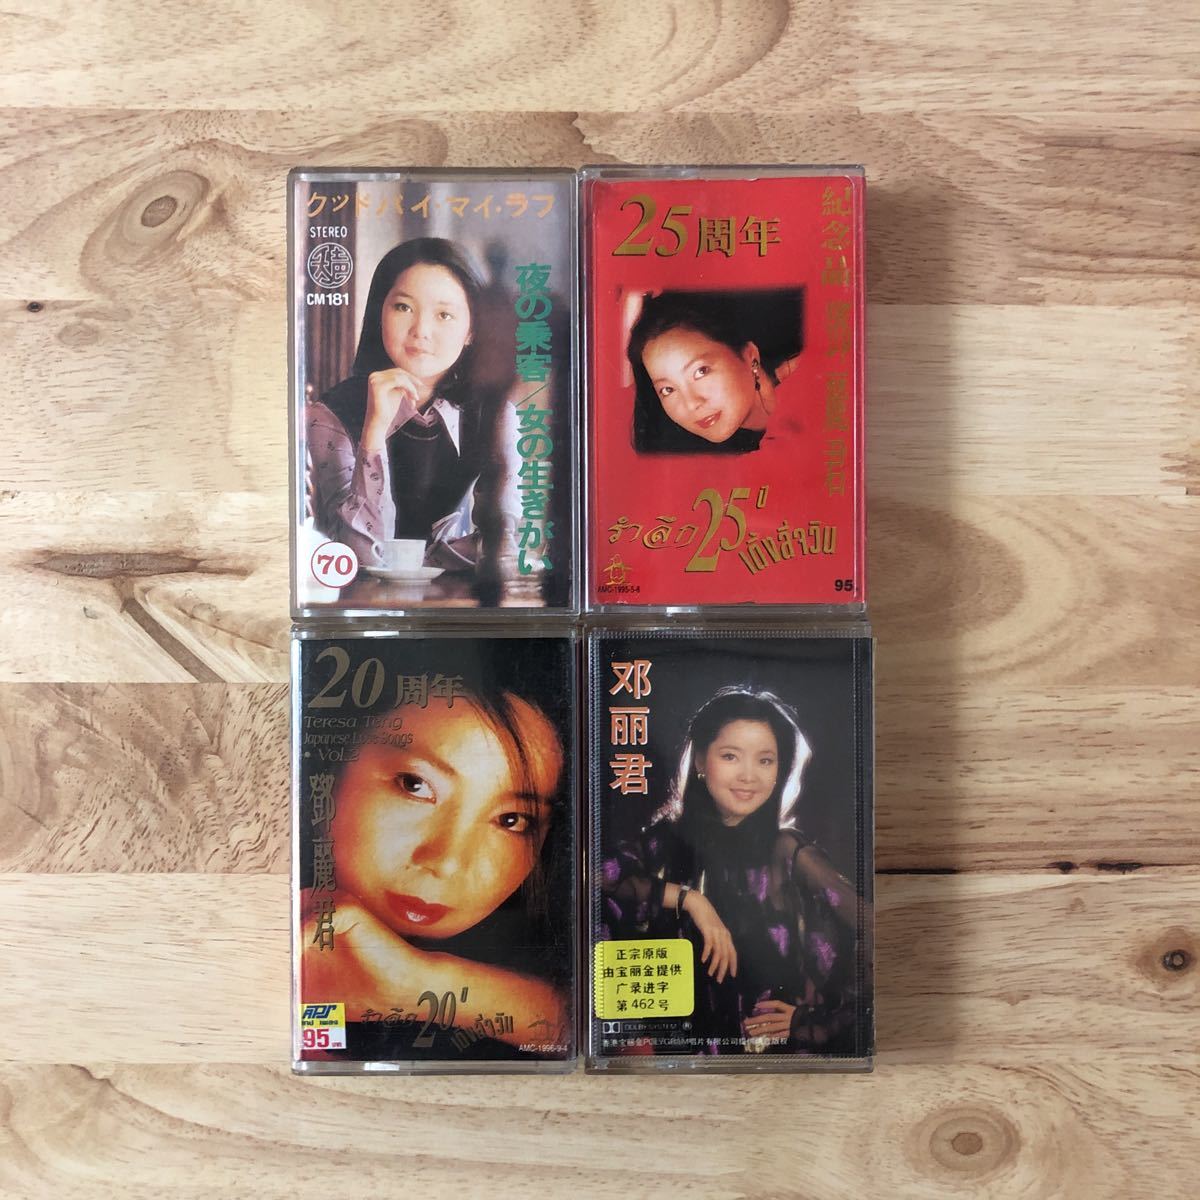 【値下げ】 テレサ・テン 鄧麗君 CT 台湾盤カセットテープ [動作確認済みです] 4本セット ワールドミュージック